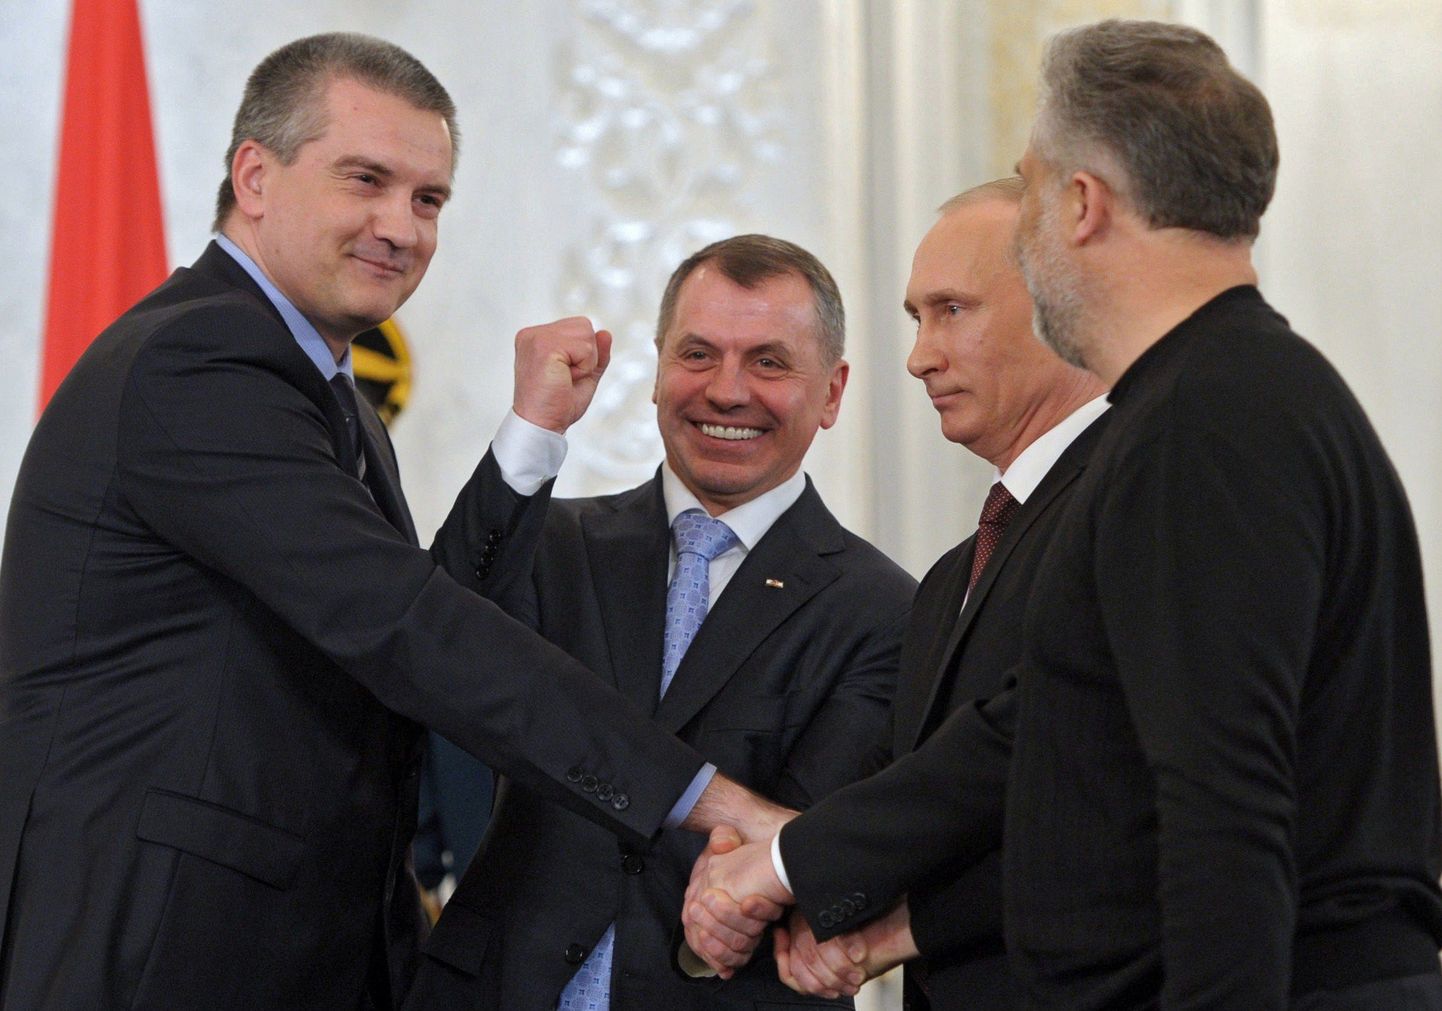 Venemaa ja Krimmi esindajad pärast lepingu sõlmimist.